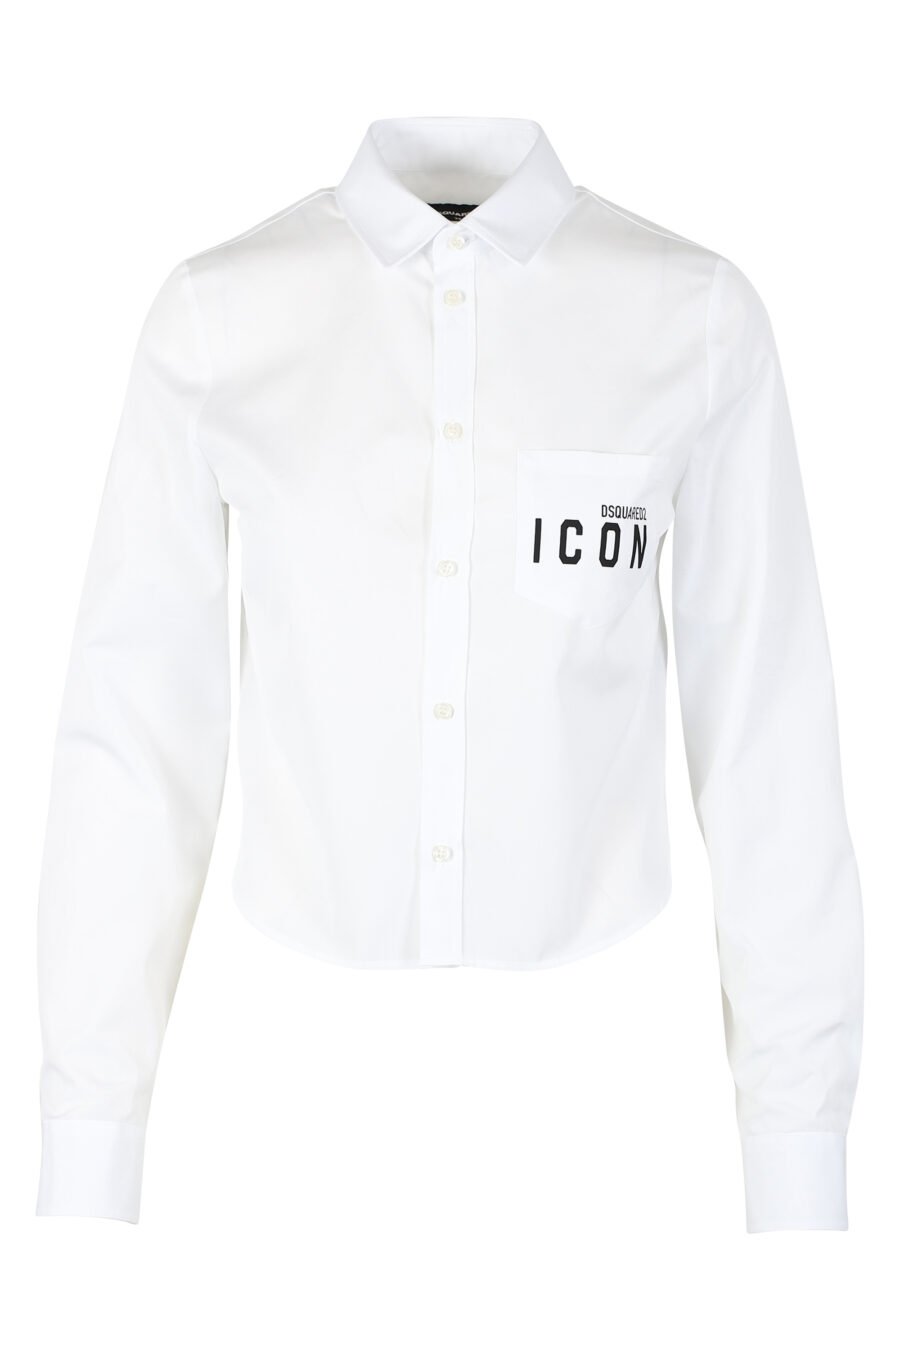 Camisa curta branca com duplo ícone minilogue - IMG 9793